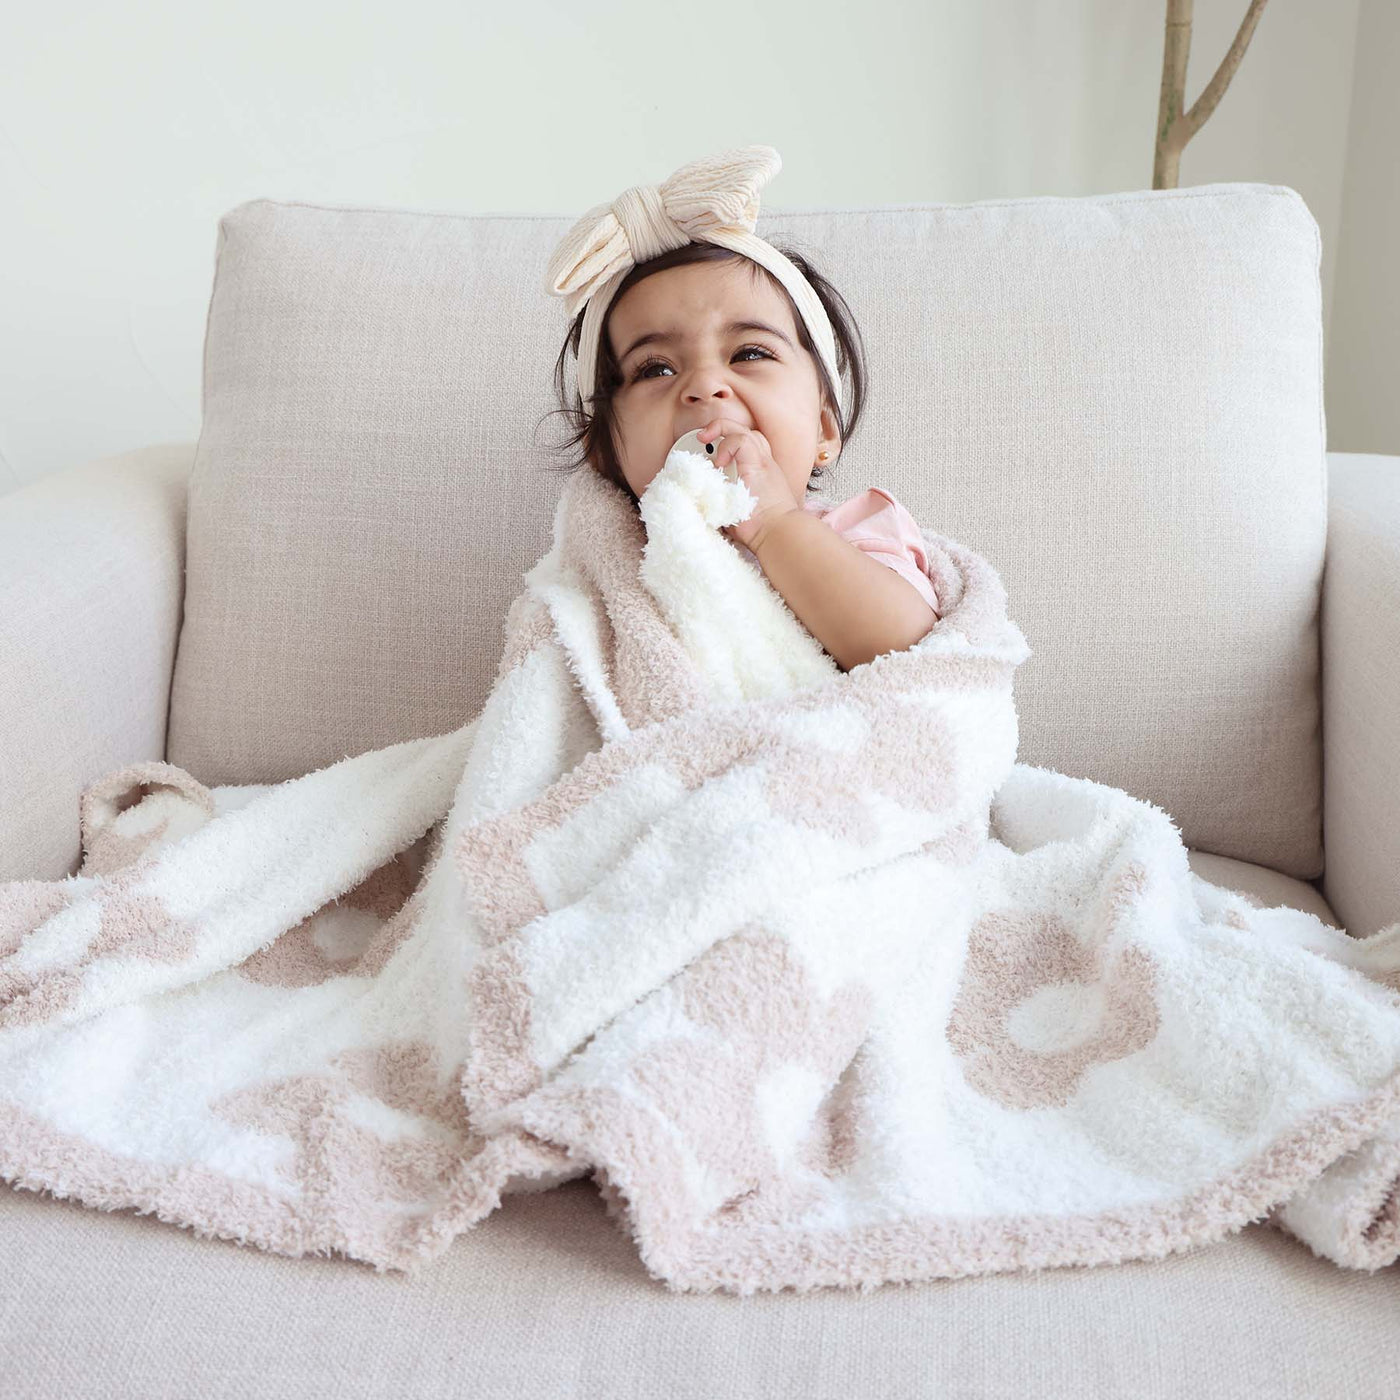 CuddleLane™ Luxe Blankets | Neutrals